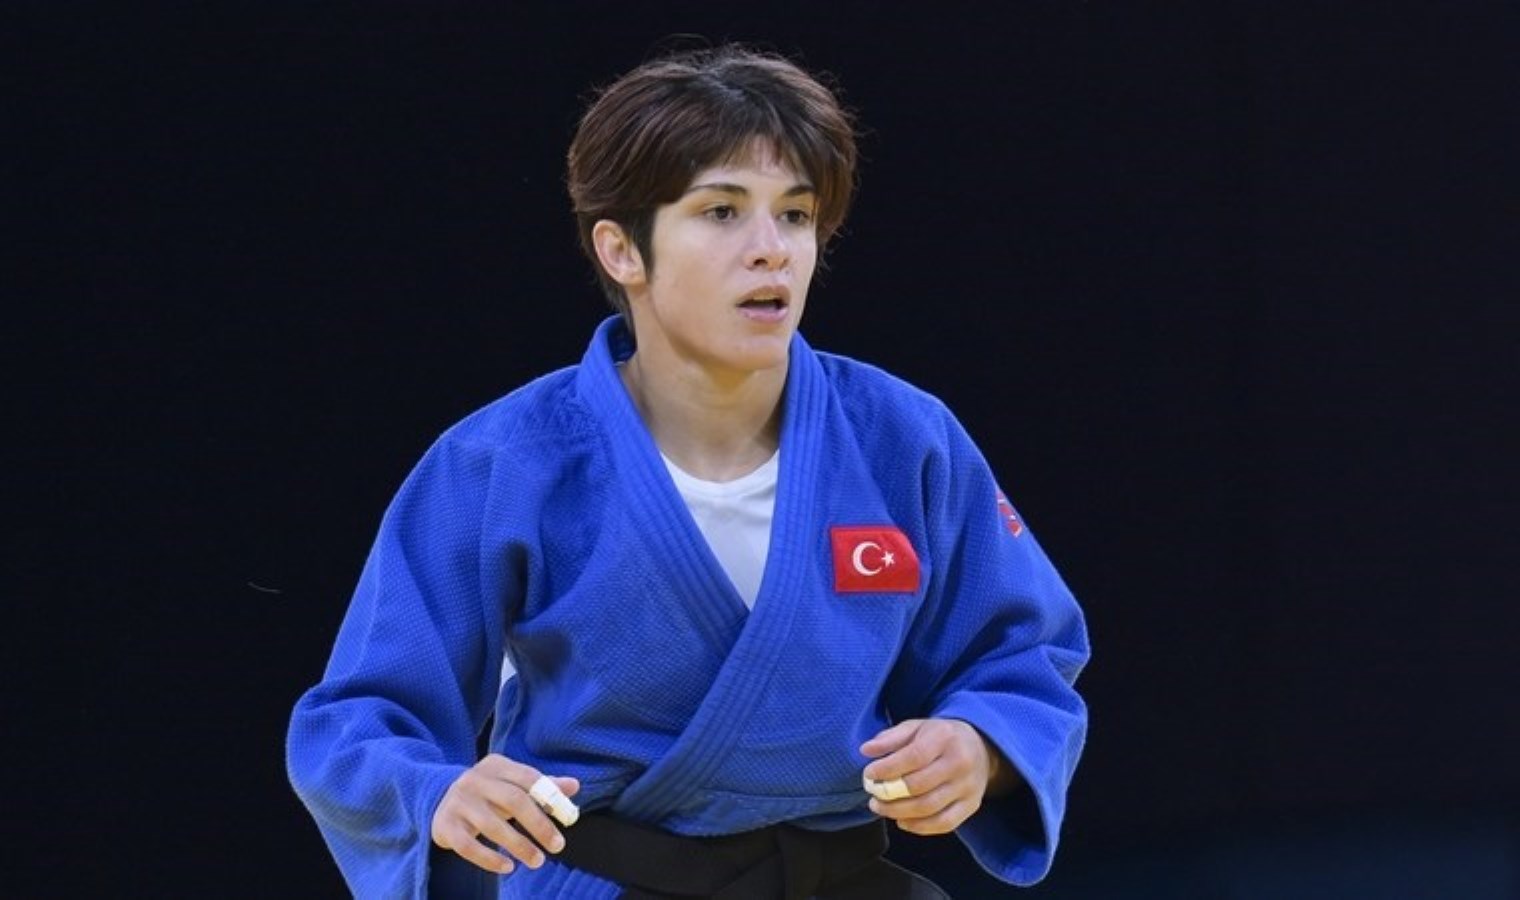 Milli judocu Tuğçe Beder, Paris 2024’e veda etti!